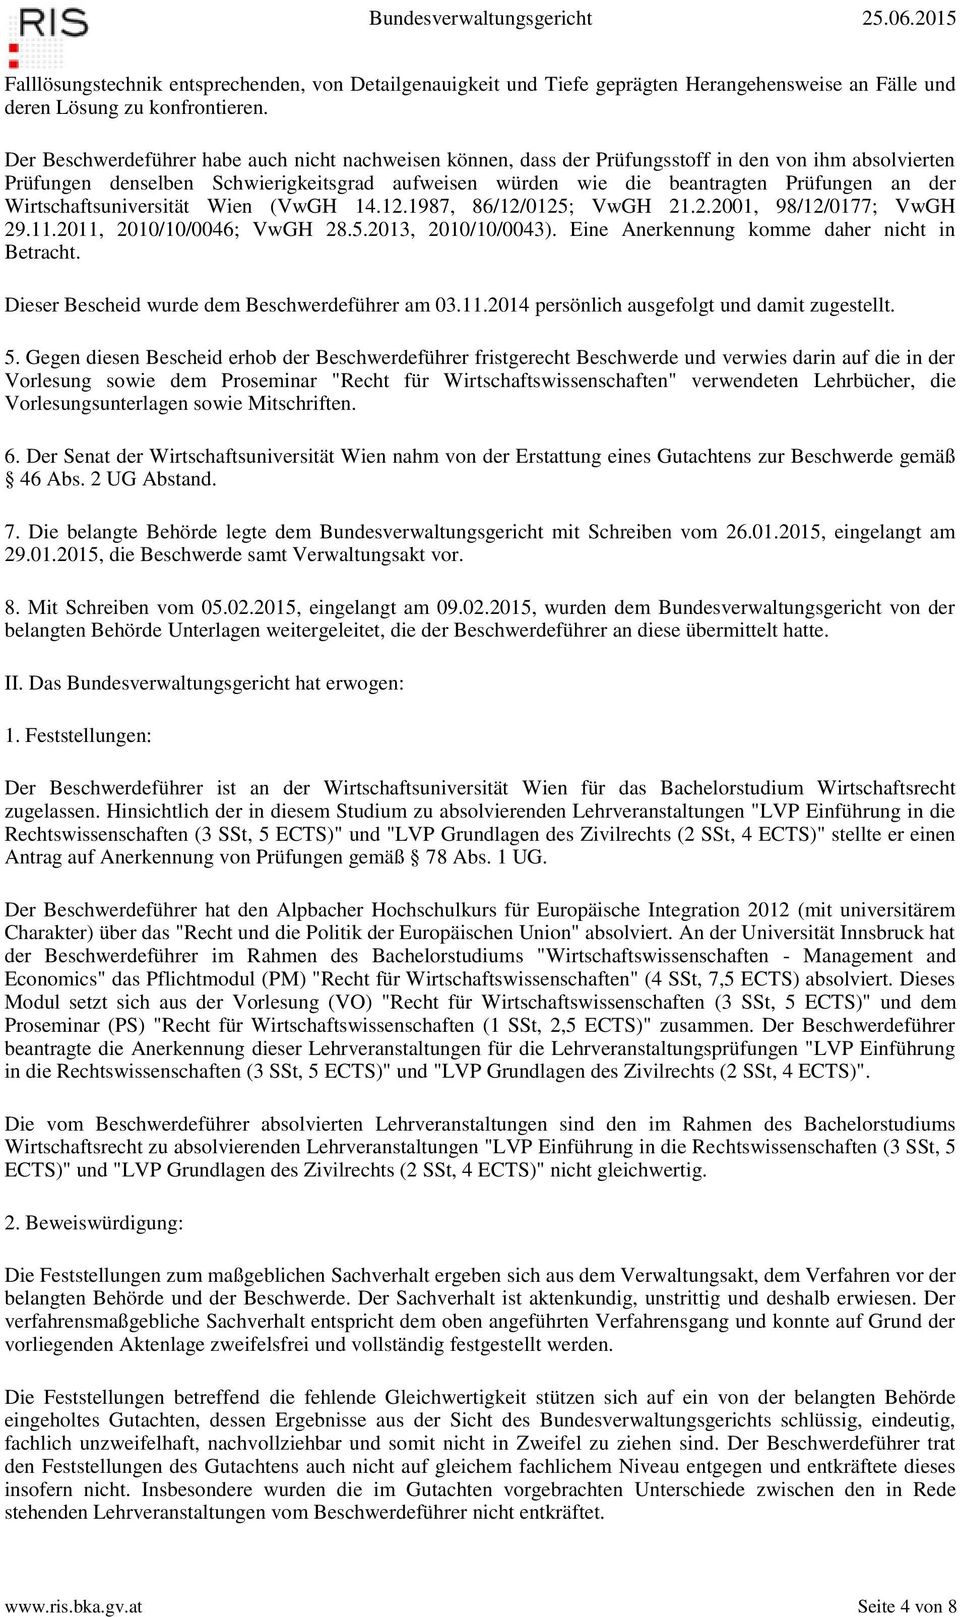 Wirtschaftsuniversität Wien (VwGH 14.12.1987, 86/12/0125; VwGH 21.2.2001, 98/12/0177; VwGH 29.11.2011, 2010/10/0046; VwGH 28.5.2013, 2010/10/0043). Eine Anerkennung komme daher nicht in Betracht.